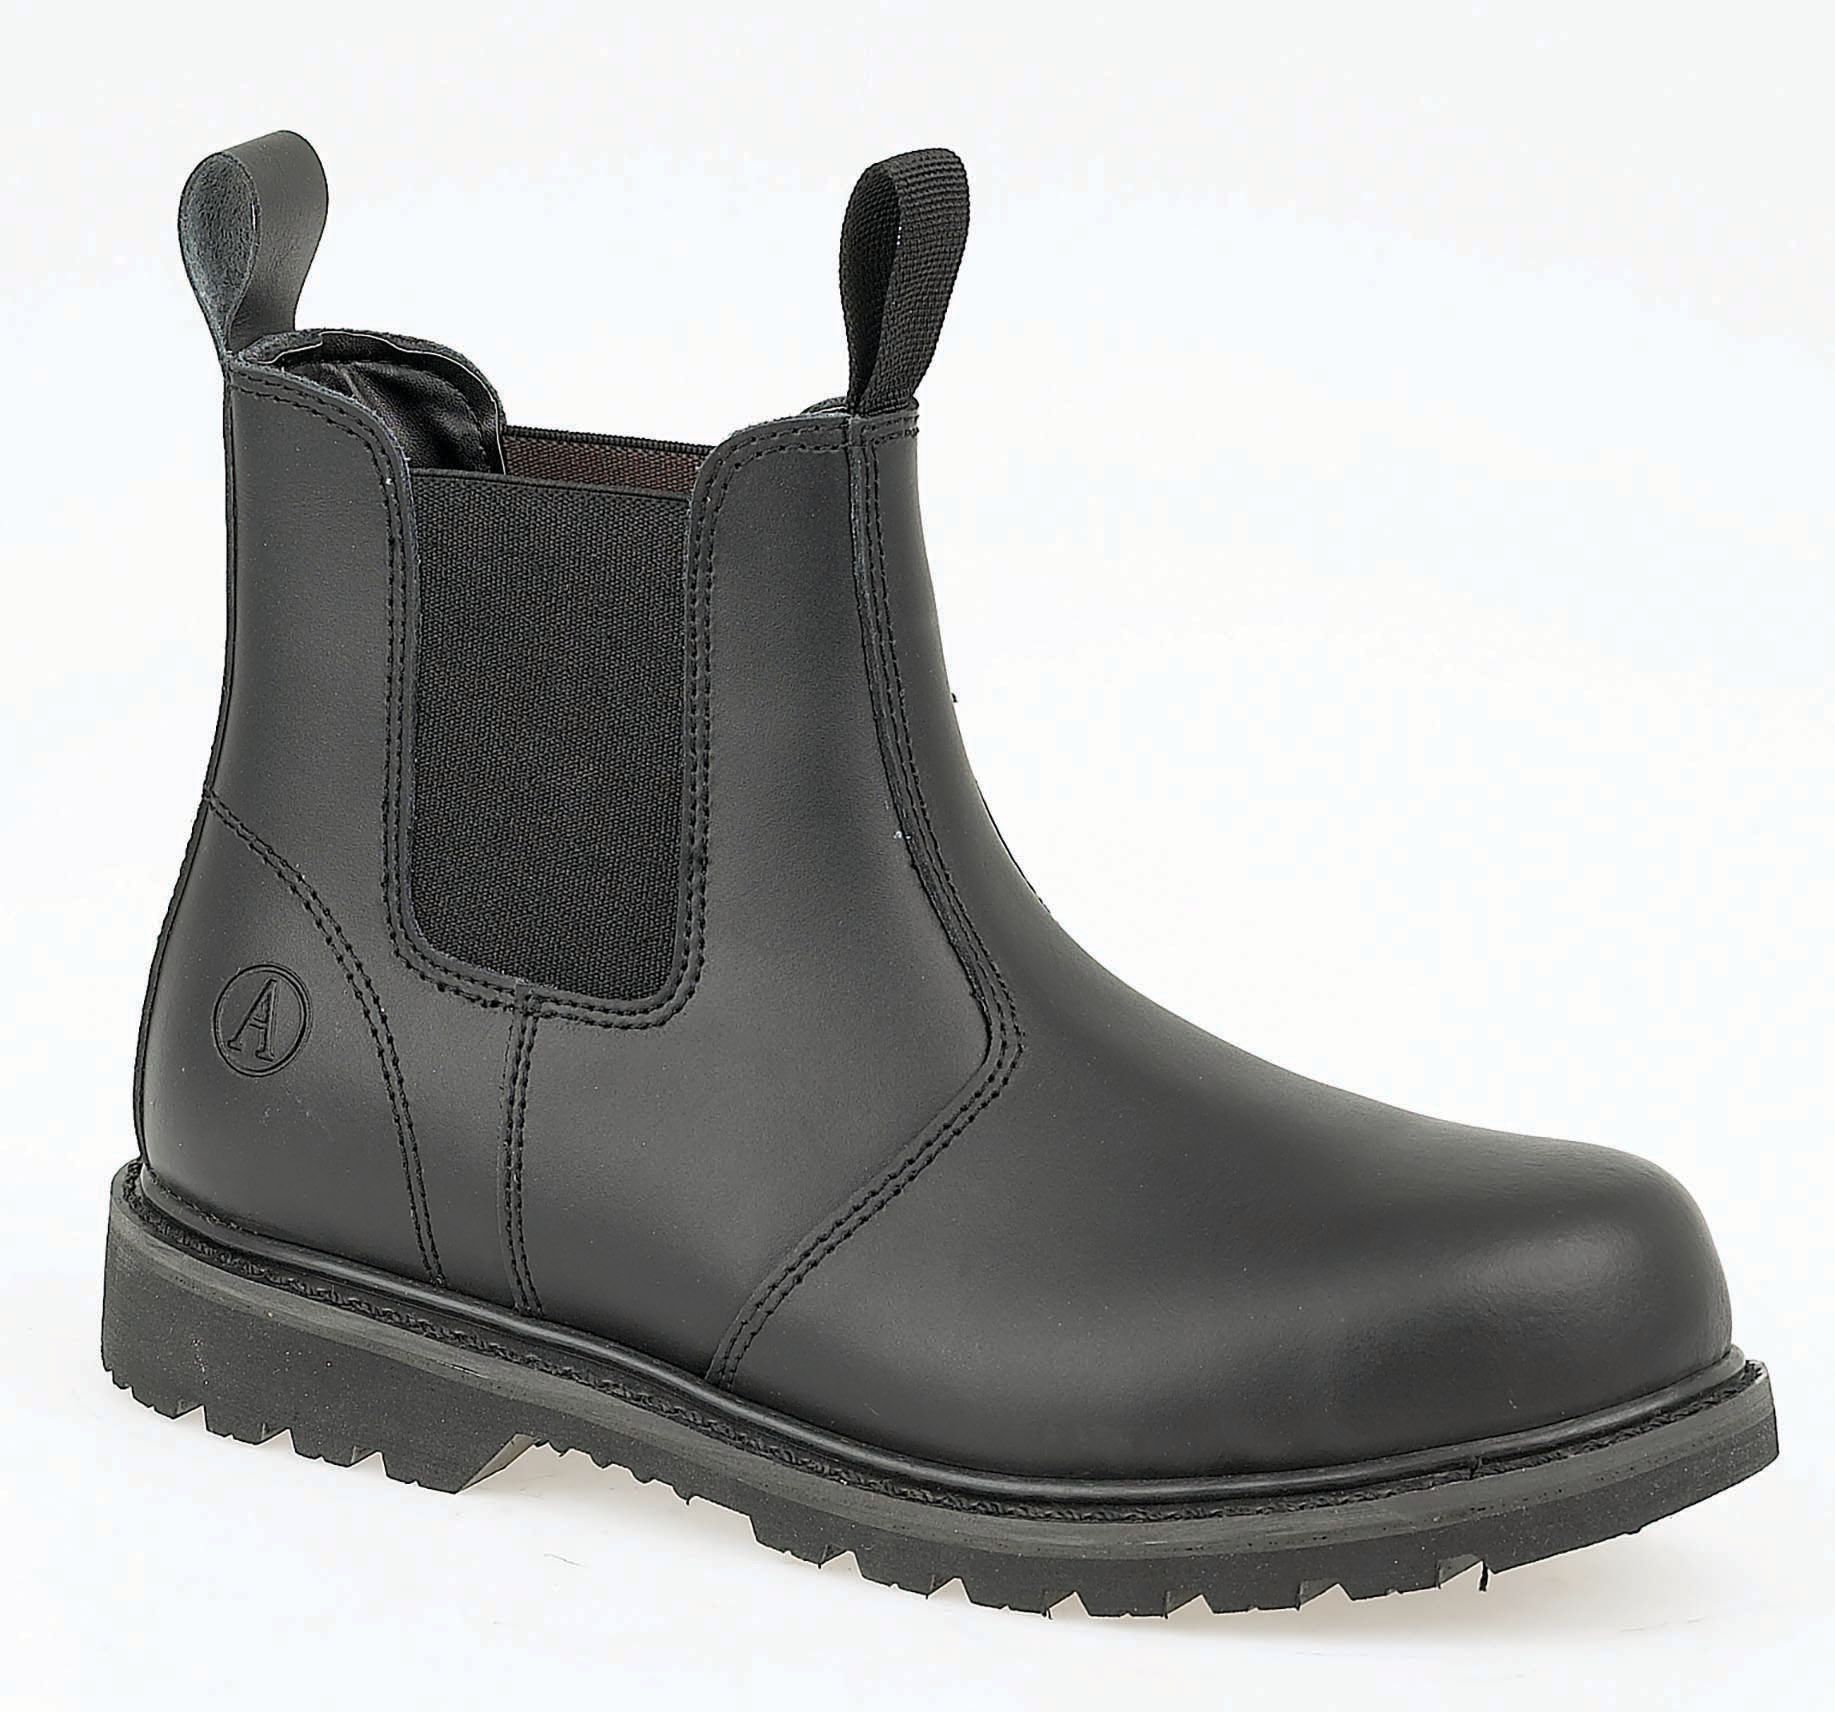 Image of Amblers Safety FS5 Dealer Safety Boot - Black Size 13